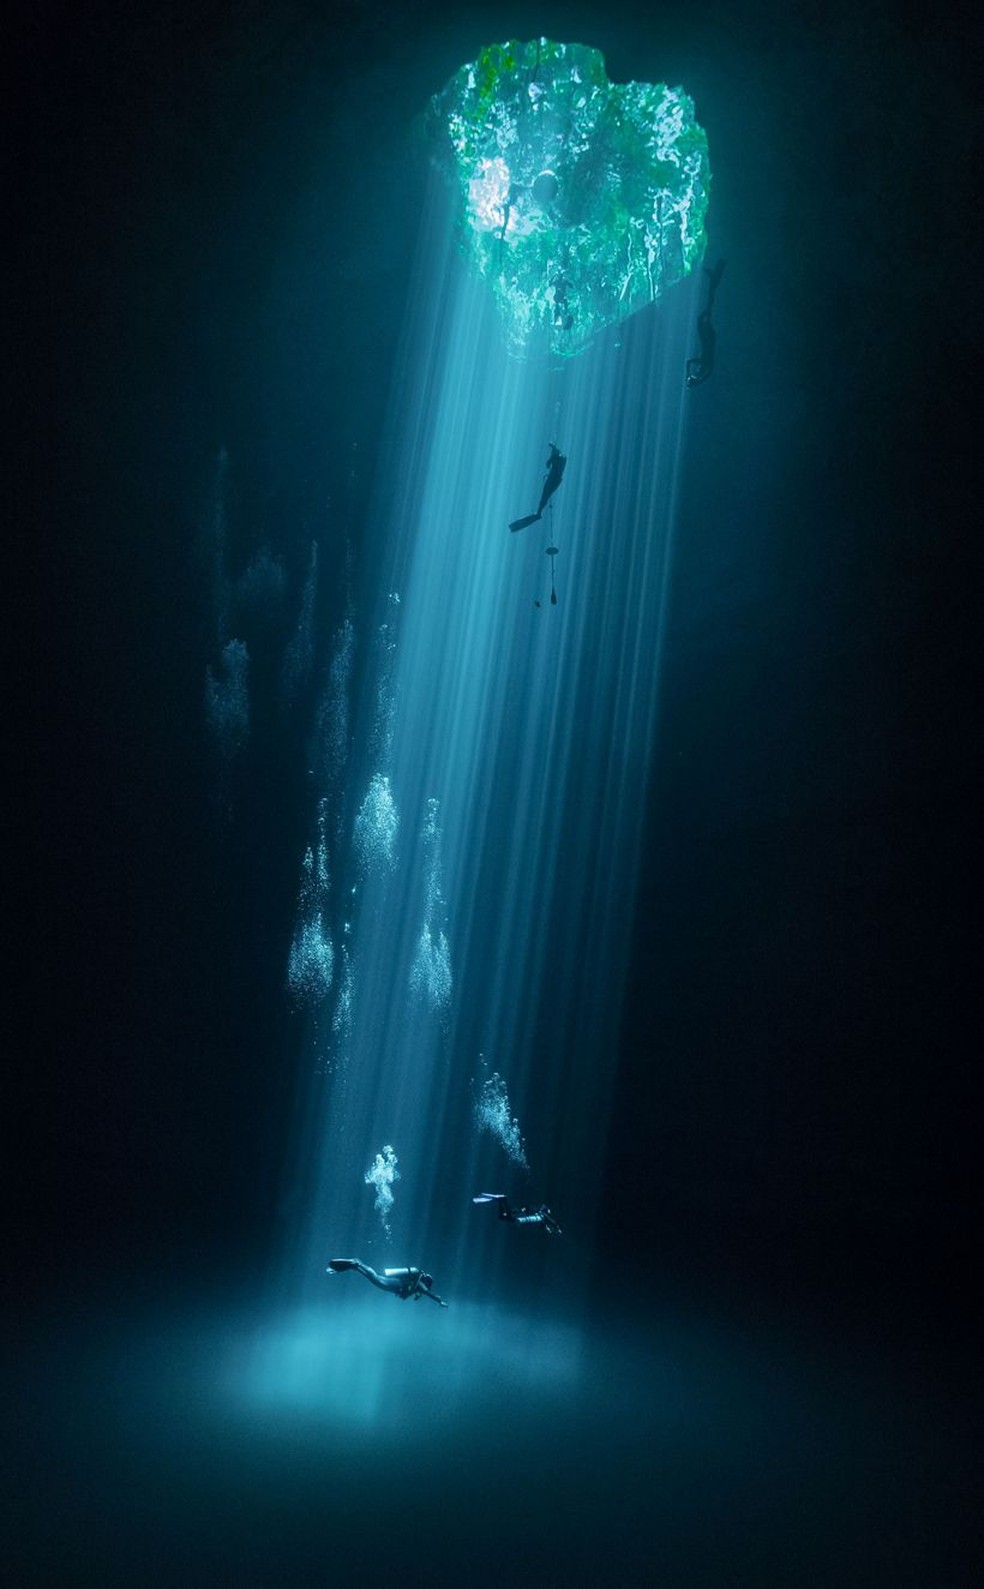 Mergulhadores em uma massa de água doce conhecida no México como Cenotes. — Foto: Joram Mennes / TNC Photo Contest 2021